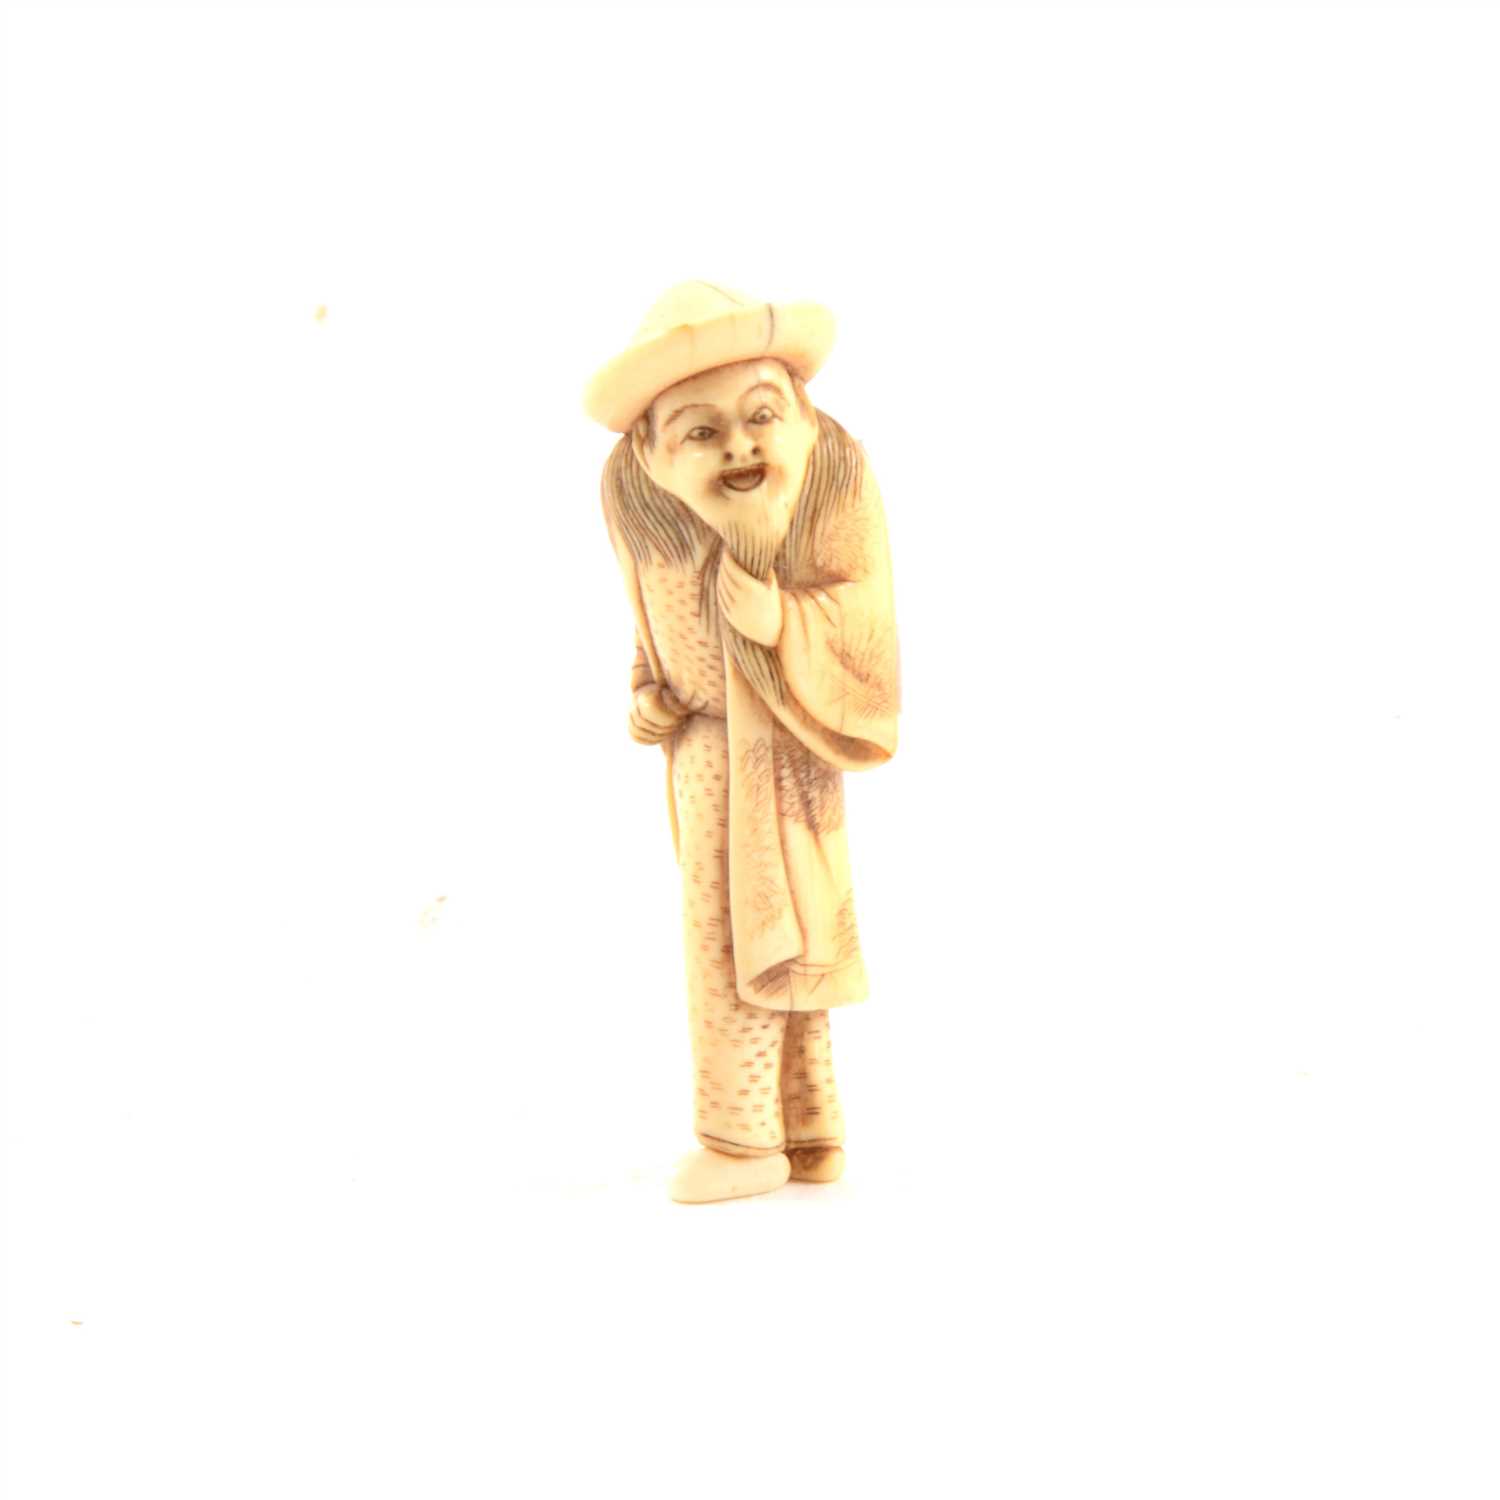 Lot 78 - Carved ivory netsuke, elder wearing a hat